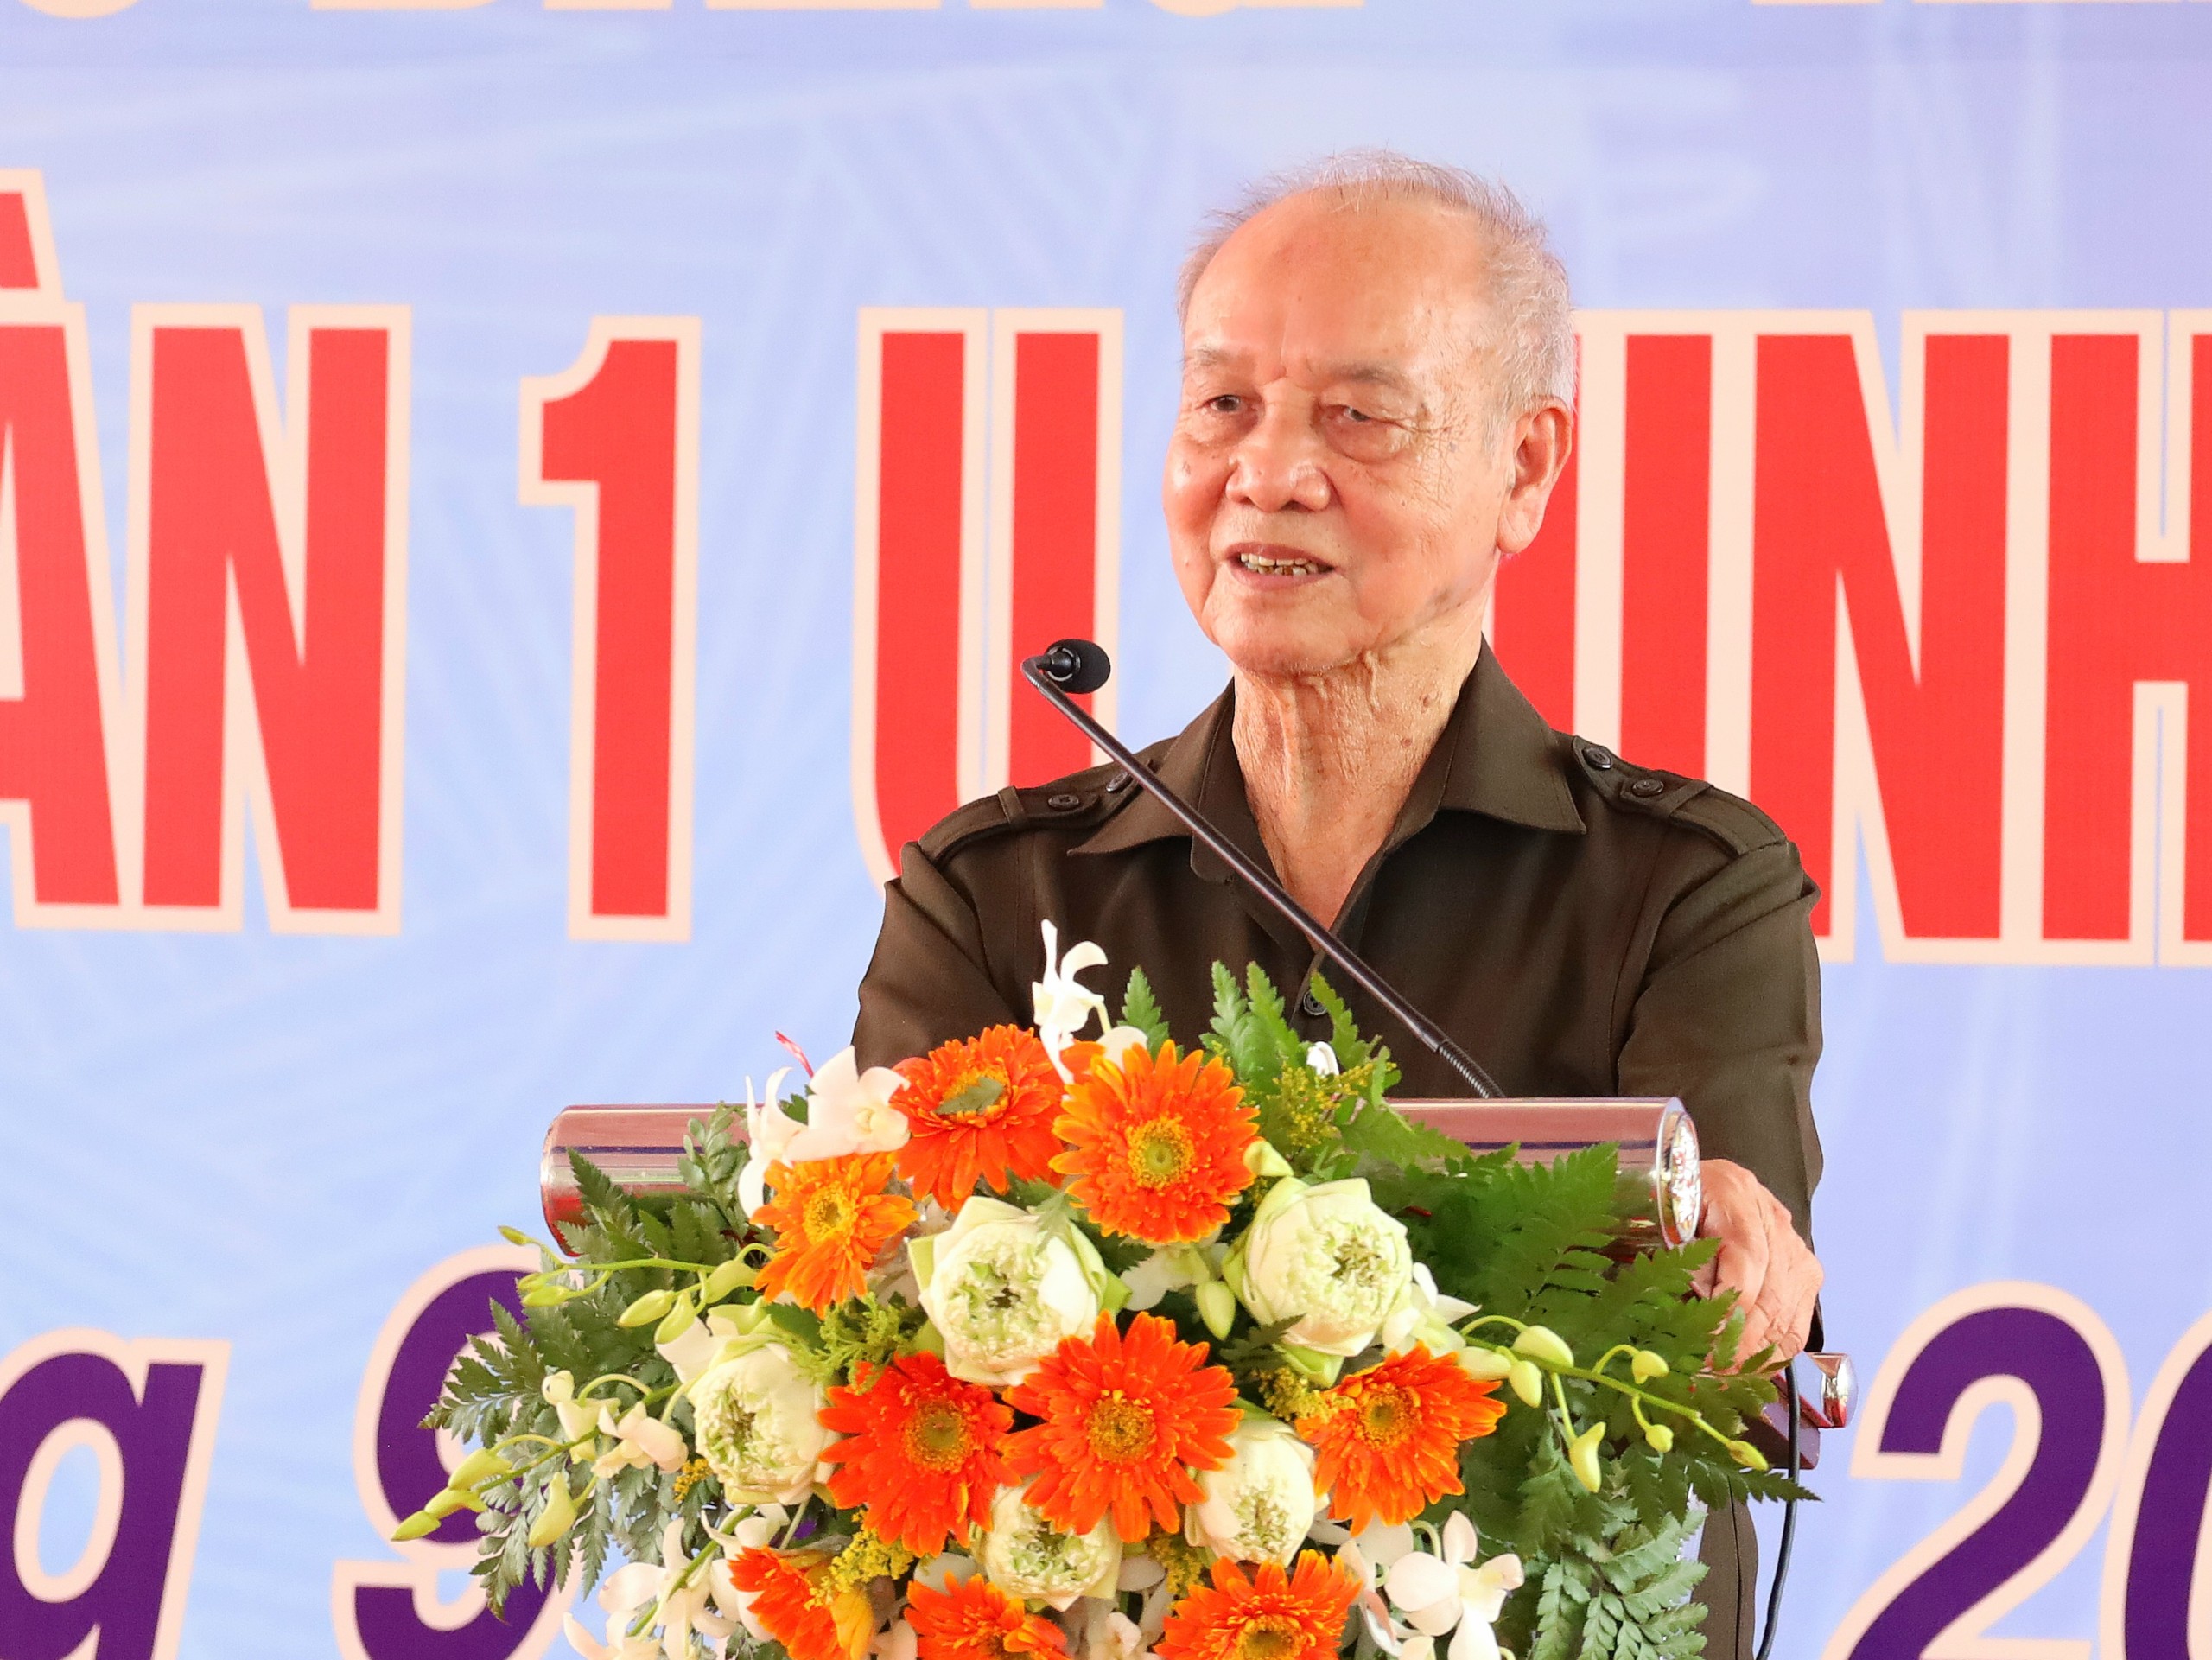 Đại tướng Phạm Văn Trà - Nguyên Ủy viên Bộ Chính trị, nguyên Bộ trưởng Bộ Quốc phòng, nguyên Trung đoàn trưởng Trung đoàn 1 U Minh phát biểu tại buổi lễ.